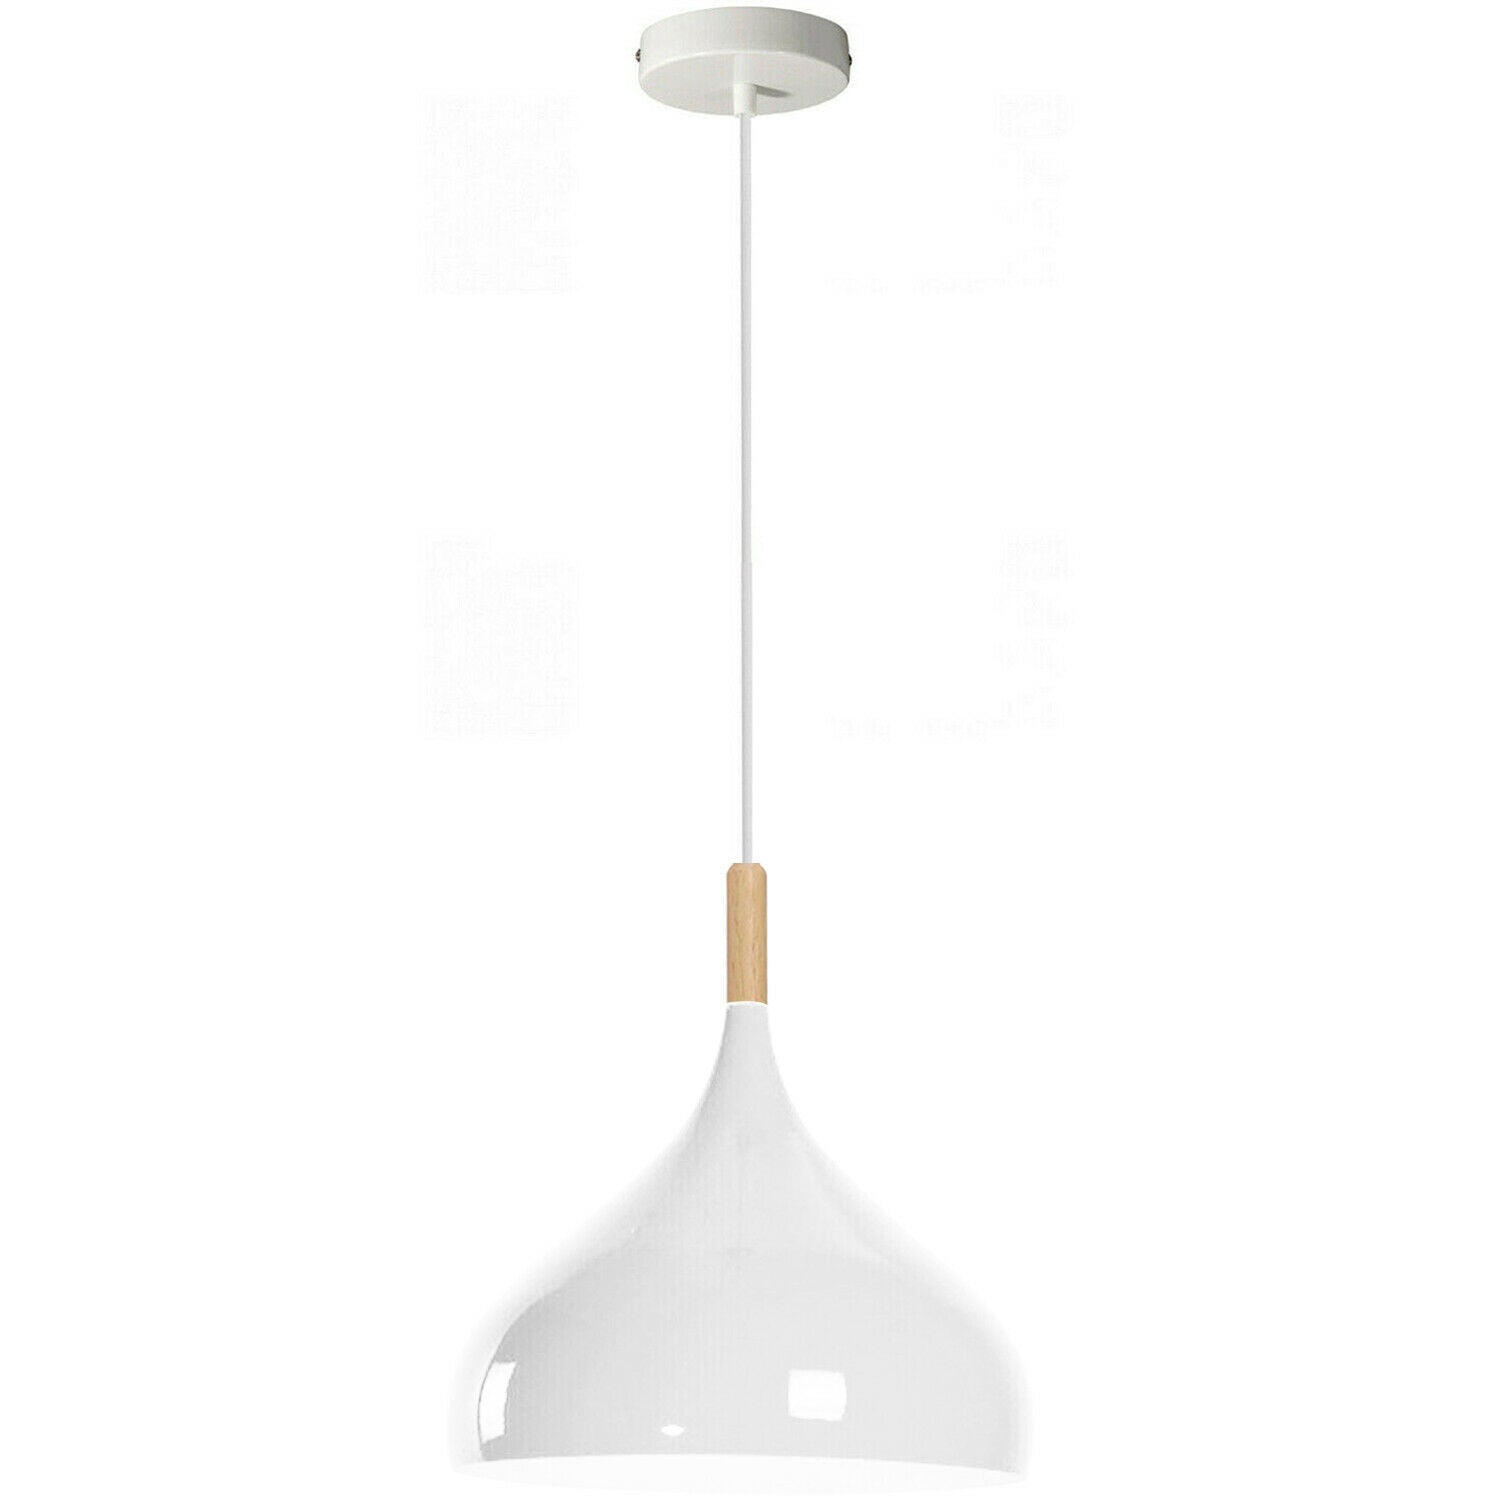 white pendant light ceiling hanging light